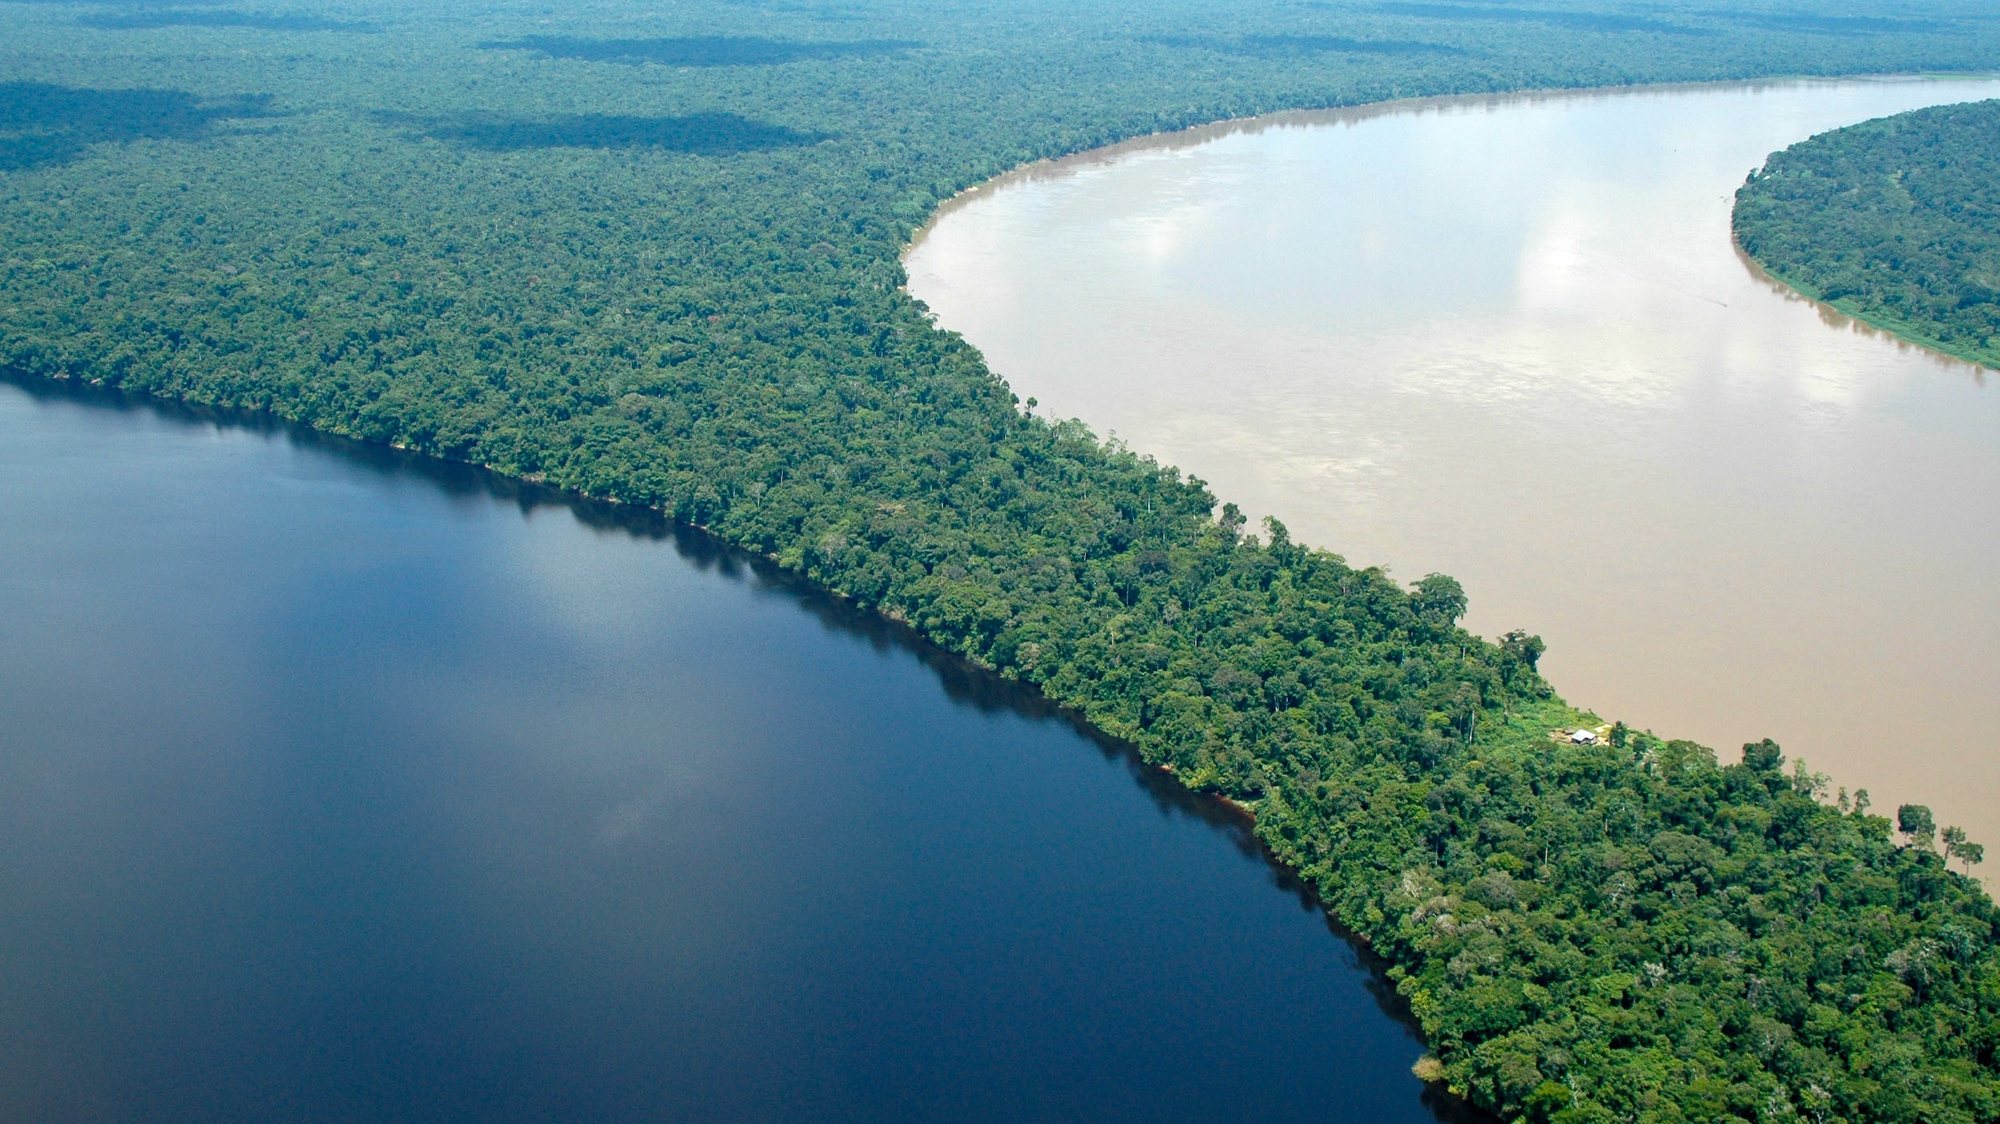 O encontro de dois grandes rios, Negro e Solimões na Amazónia, responsáveis por levar a umidade para todo o Brasil e gerar grande parte das chuvas em quase todas as regiões do país, podem &quot;secar&quot; face às mudanças climáticas globais e à desflorestação ilegal, 26 de Outubro de 2008. (ACOMPANHA TEXTO) MARGI MOSS/LUSA
+++EXCLUSIVO PARA UTILIZAÇÃO EDITORIAL+++